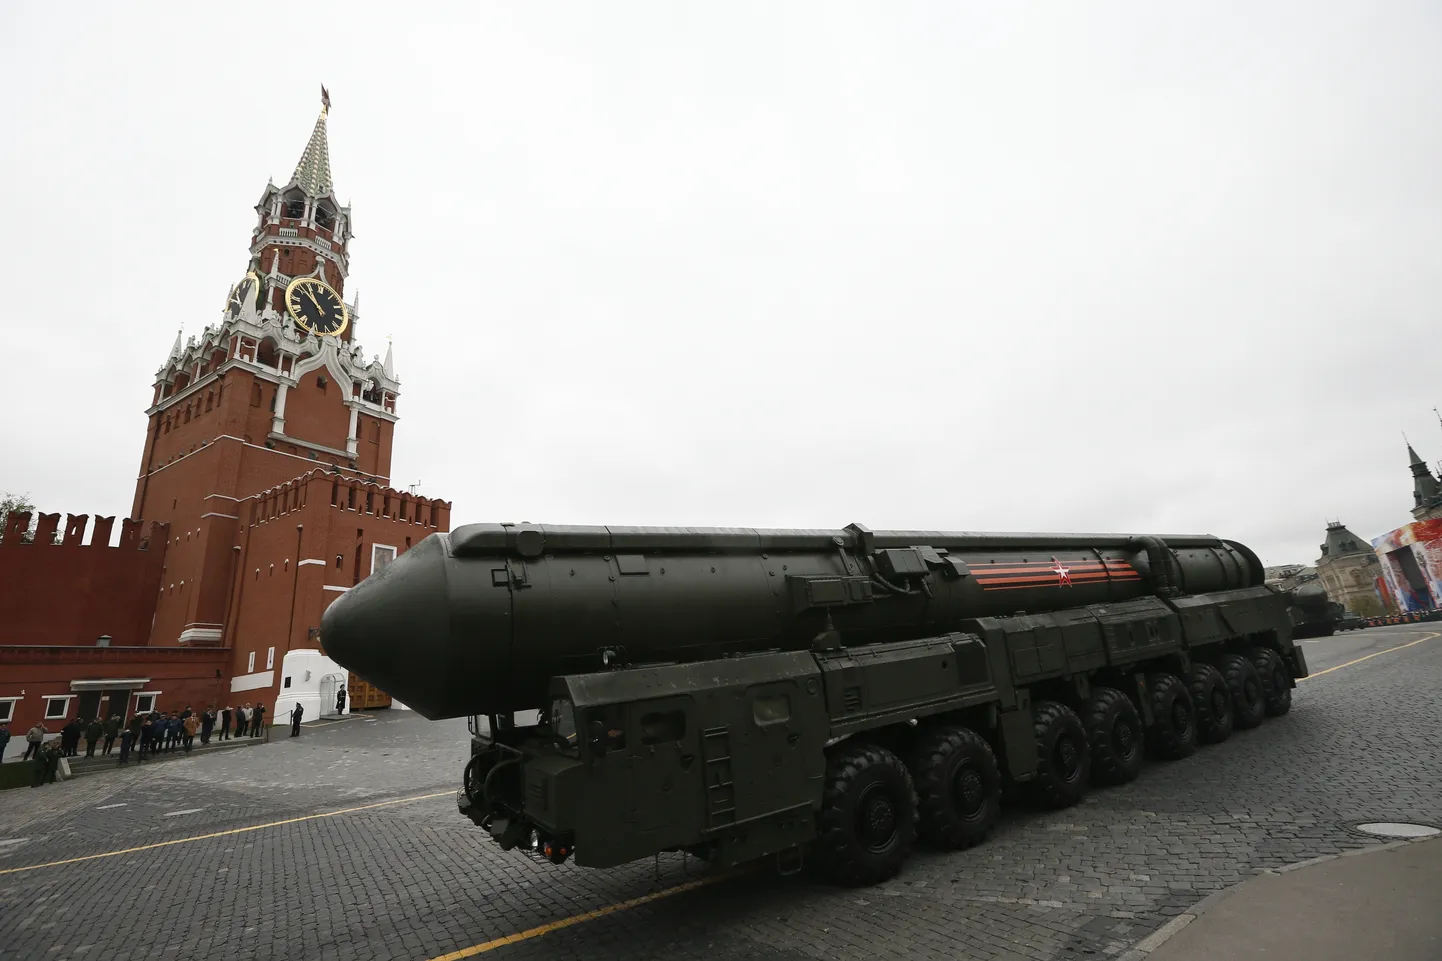 Venemaa mandritevaheline rakett Topol M.